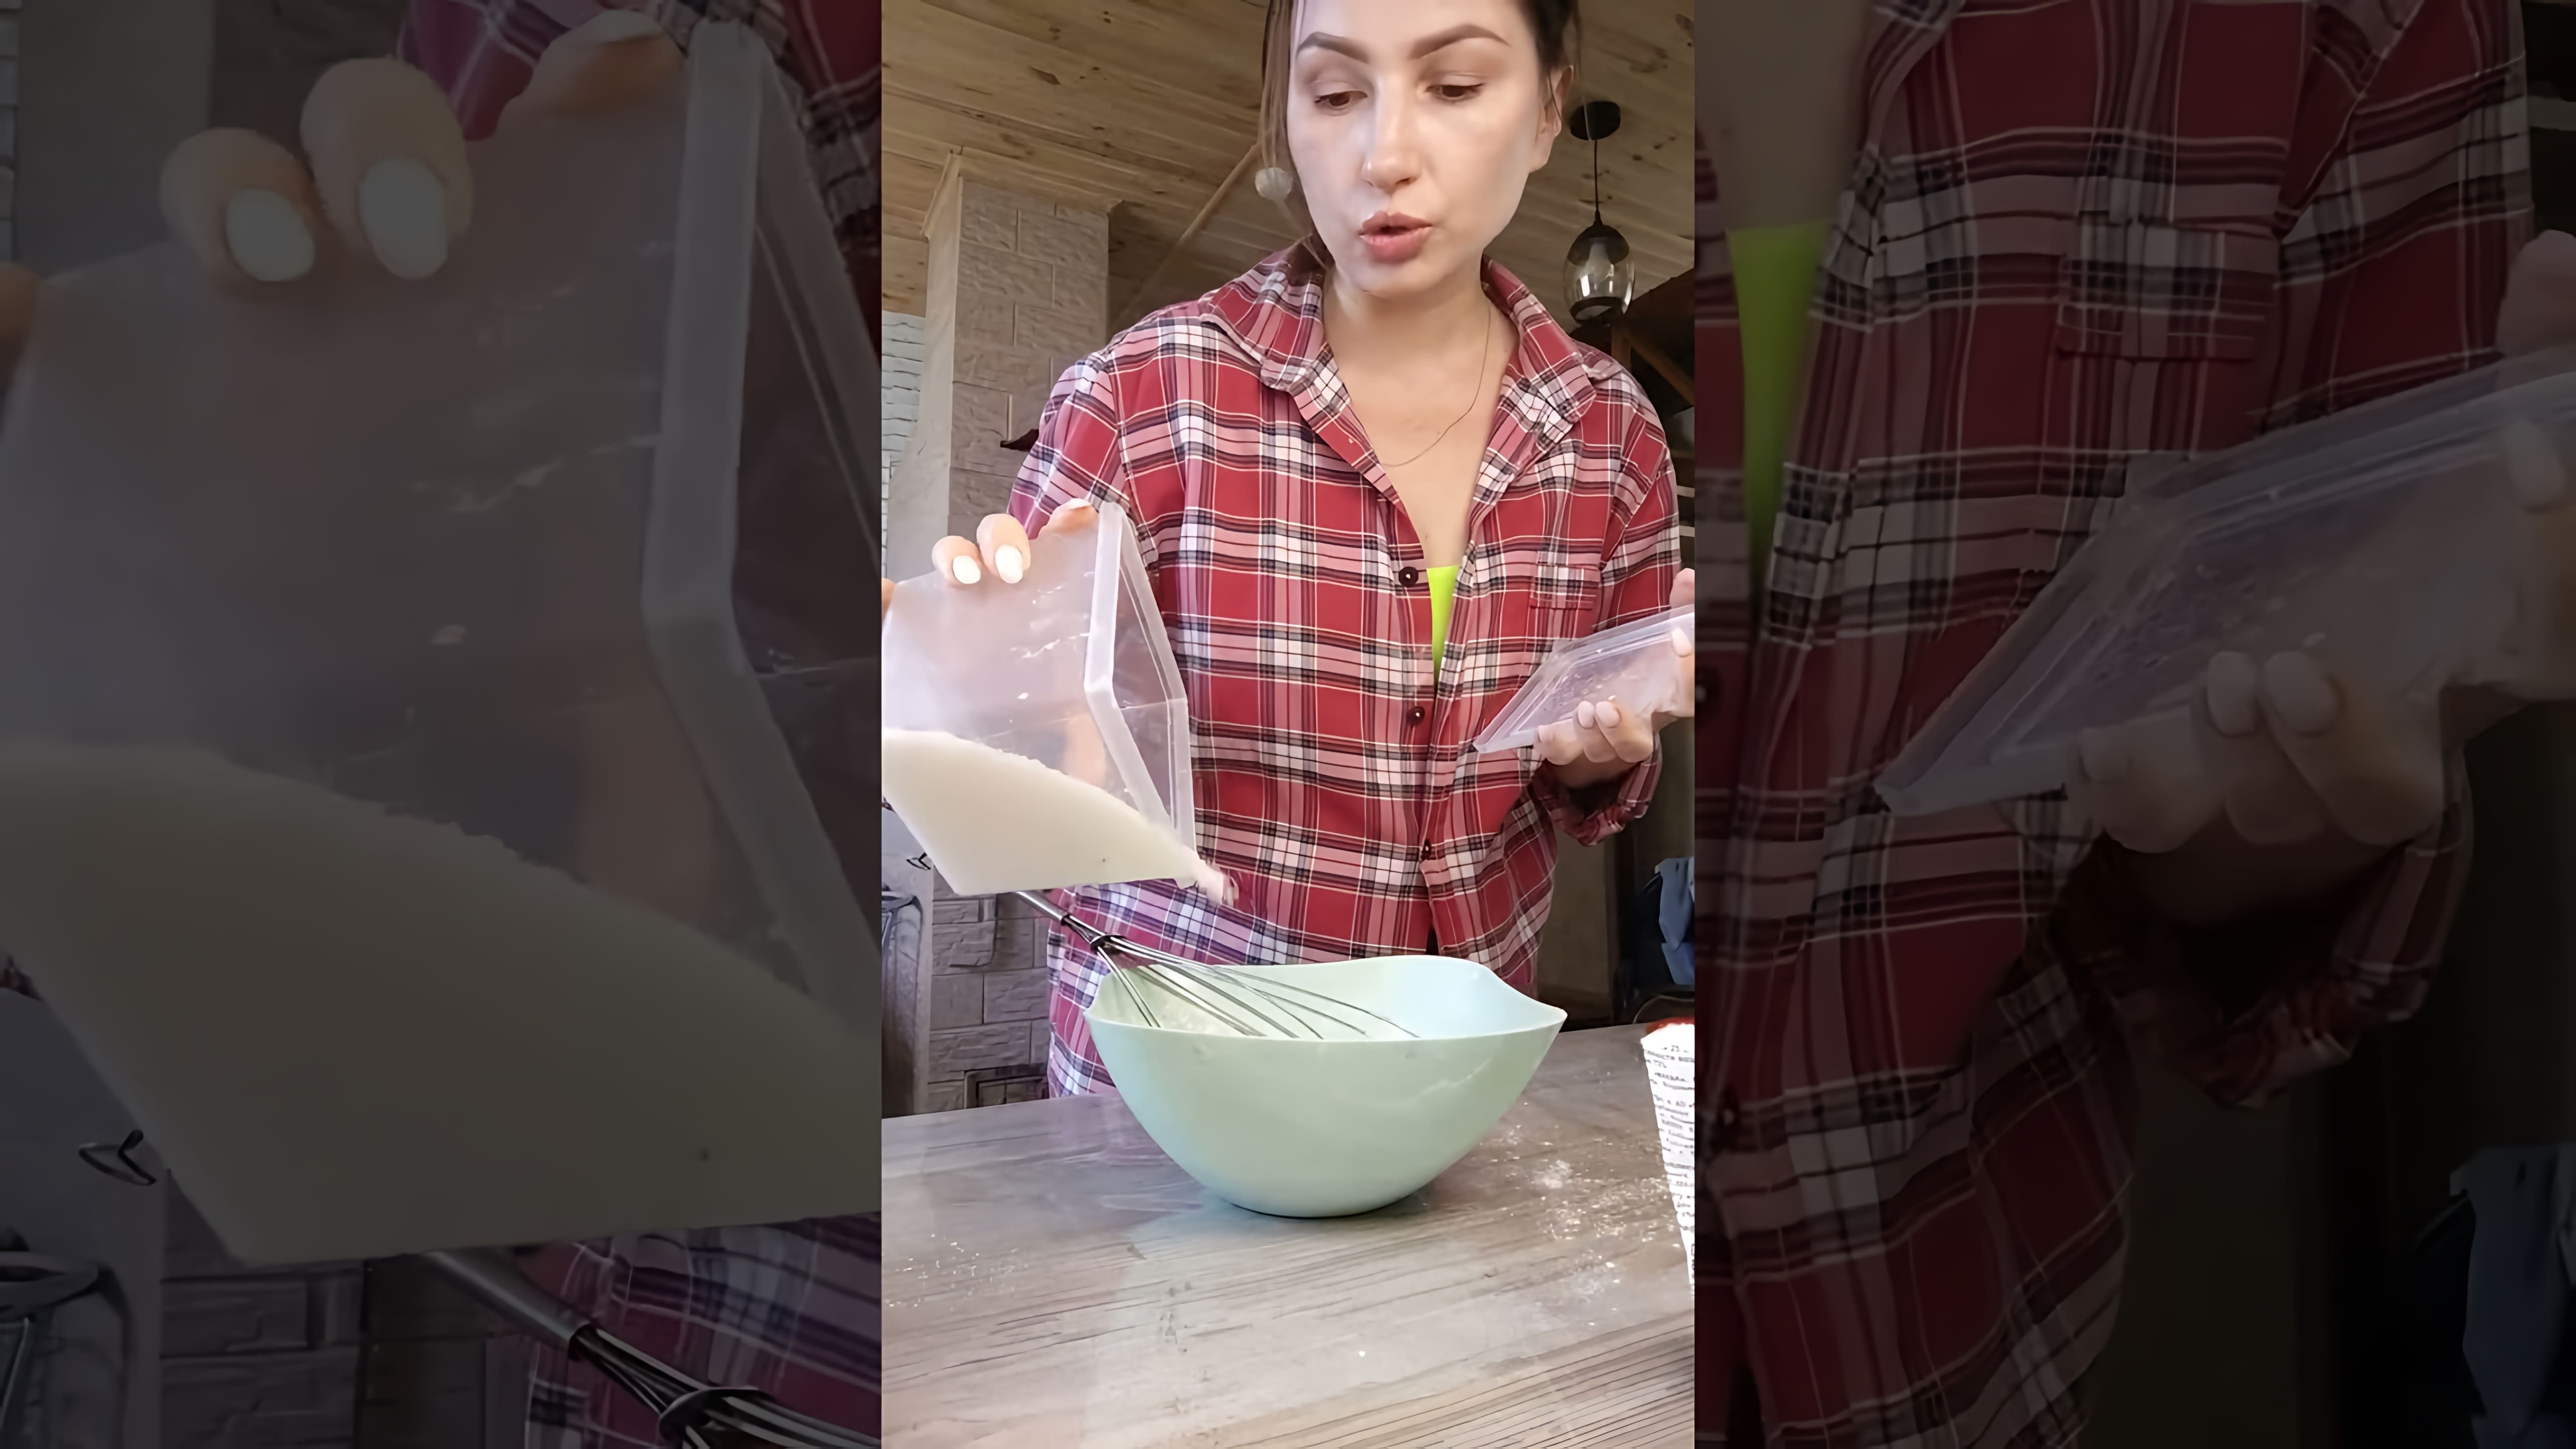 Видео посвящено приготовлению блинов на завтрак из очень ограниченного набора ингредиентов